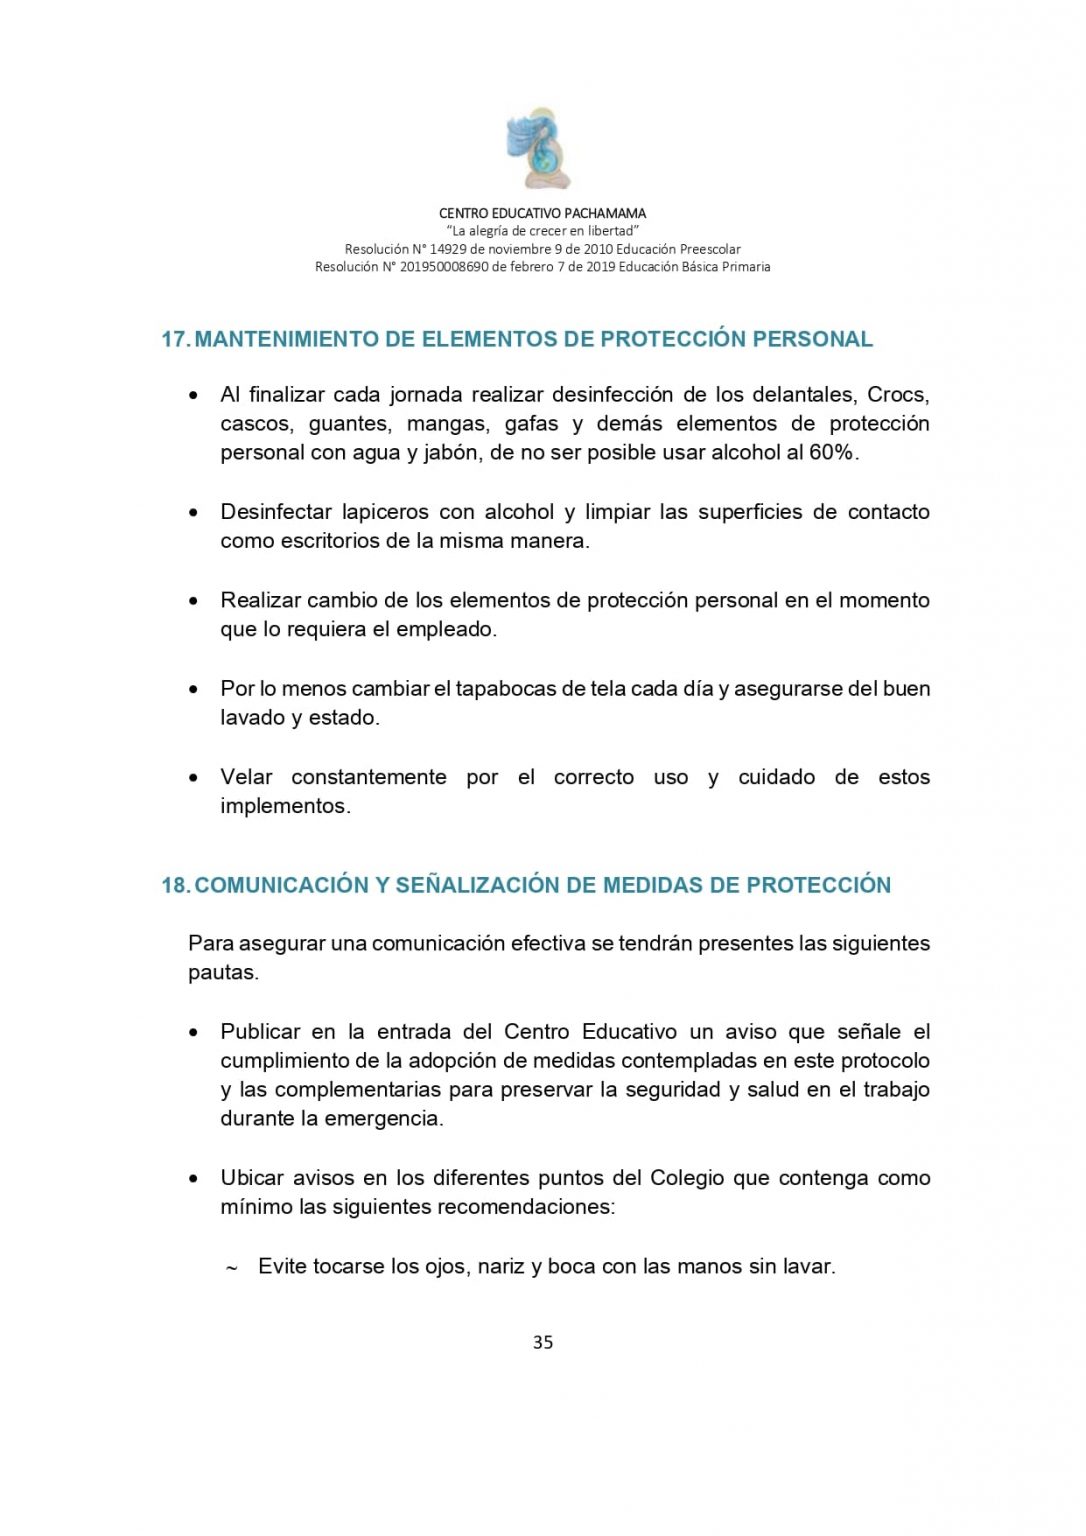 PROTOCOLO DE BIOSEGURIDAD PACHAMAMA Última Versión (3)-convertido_page-0035